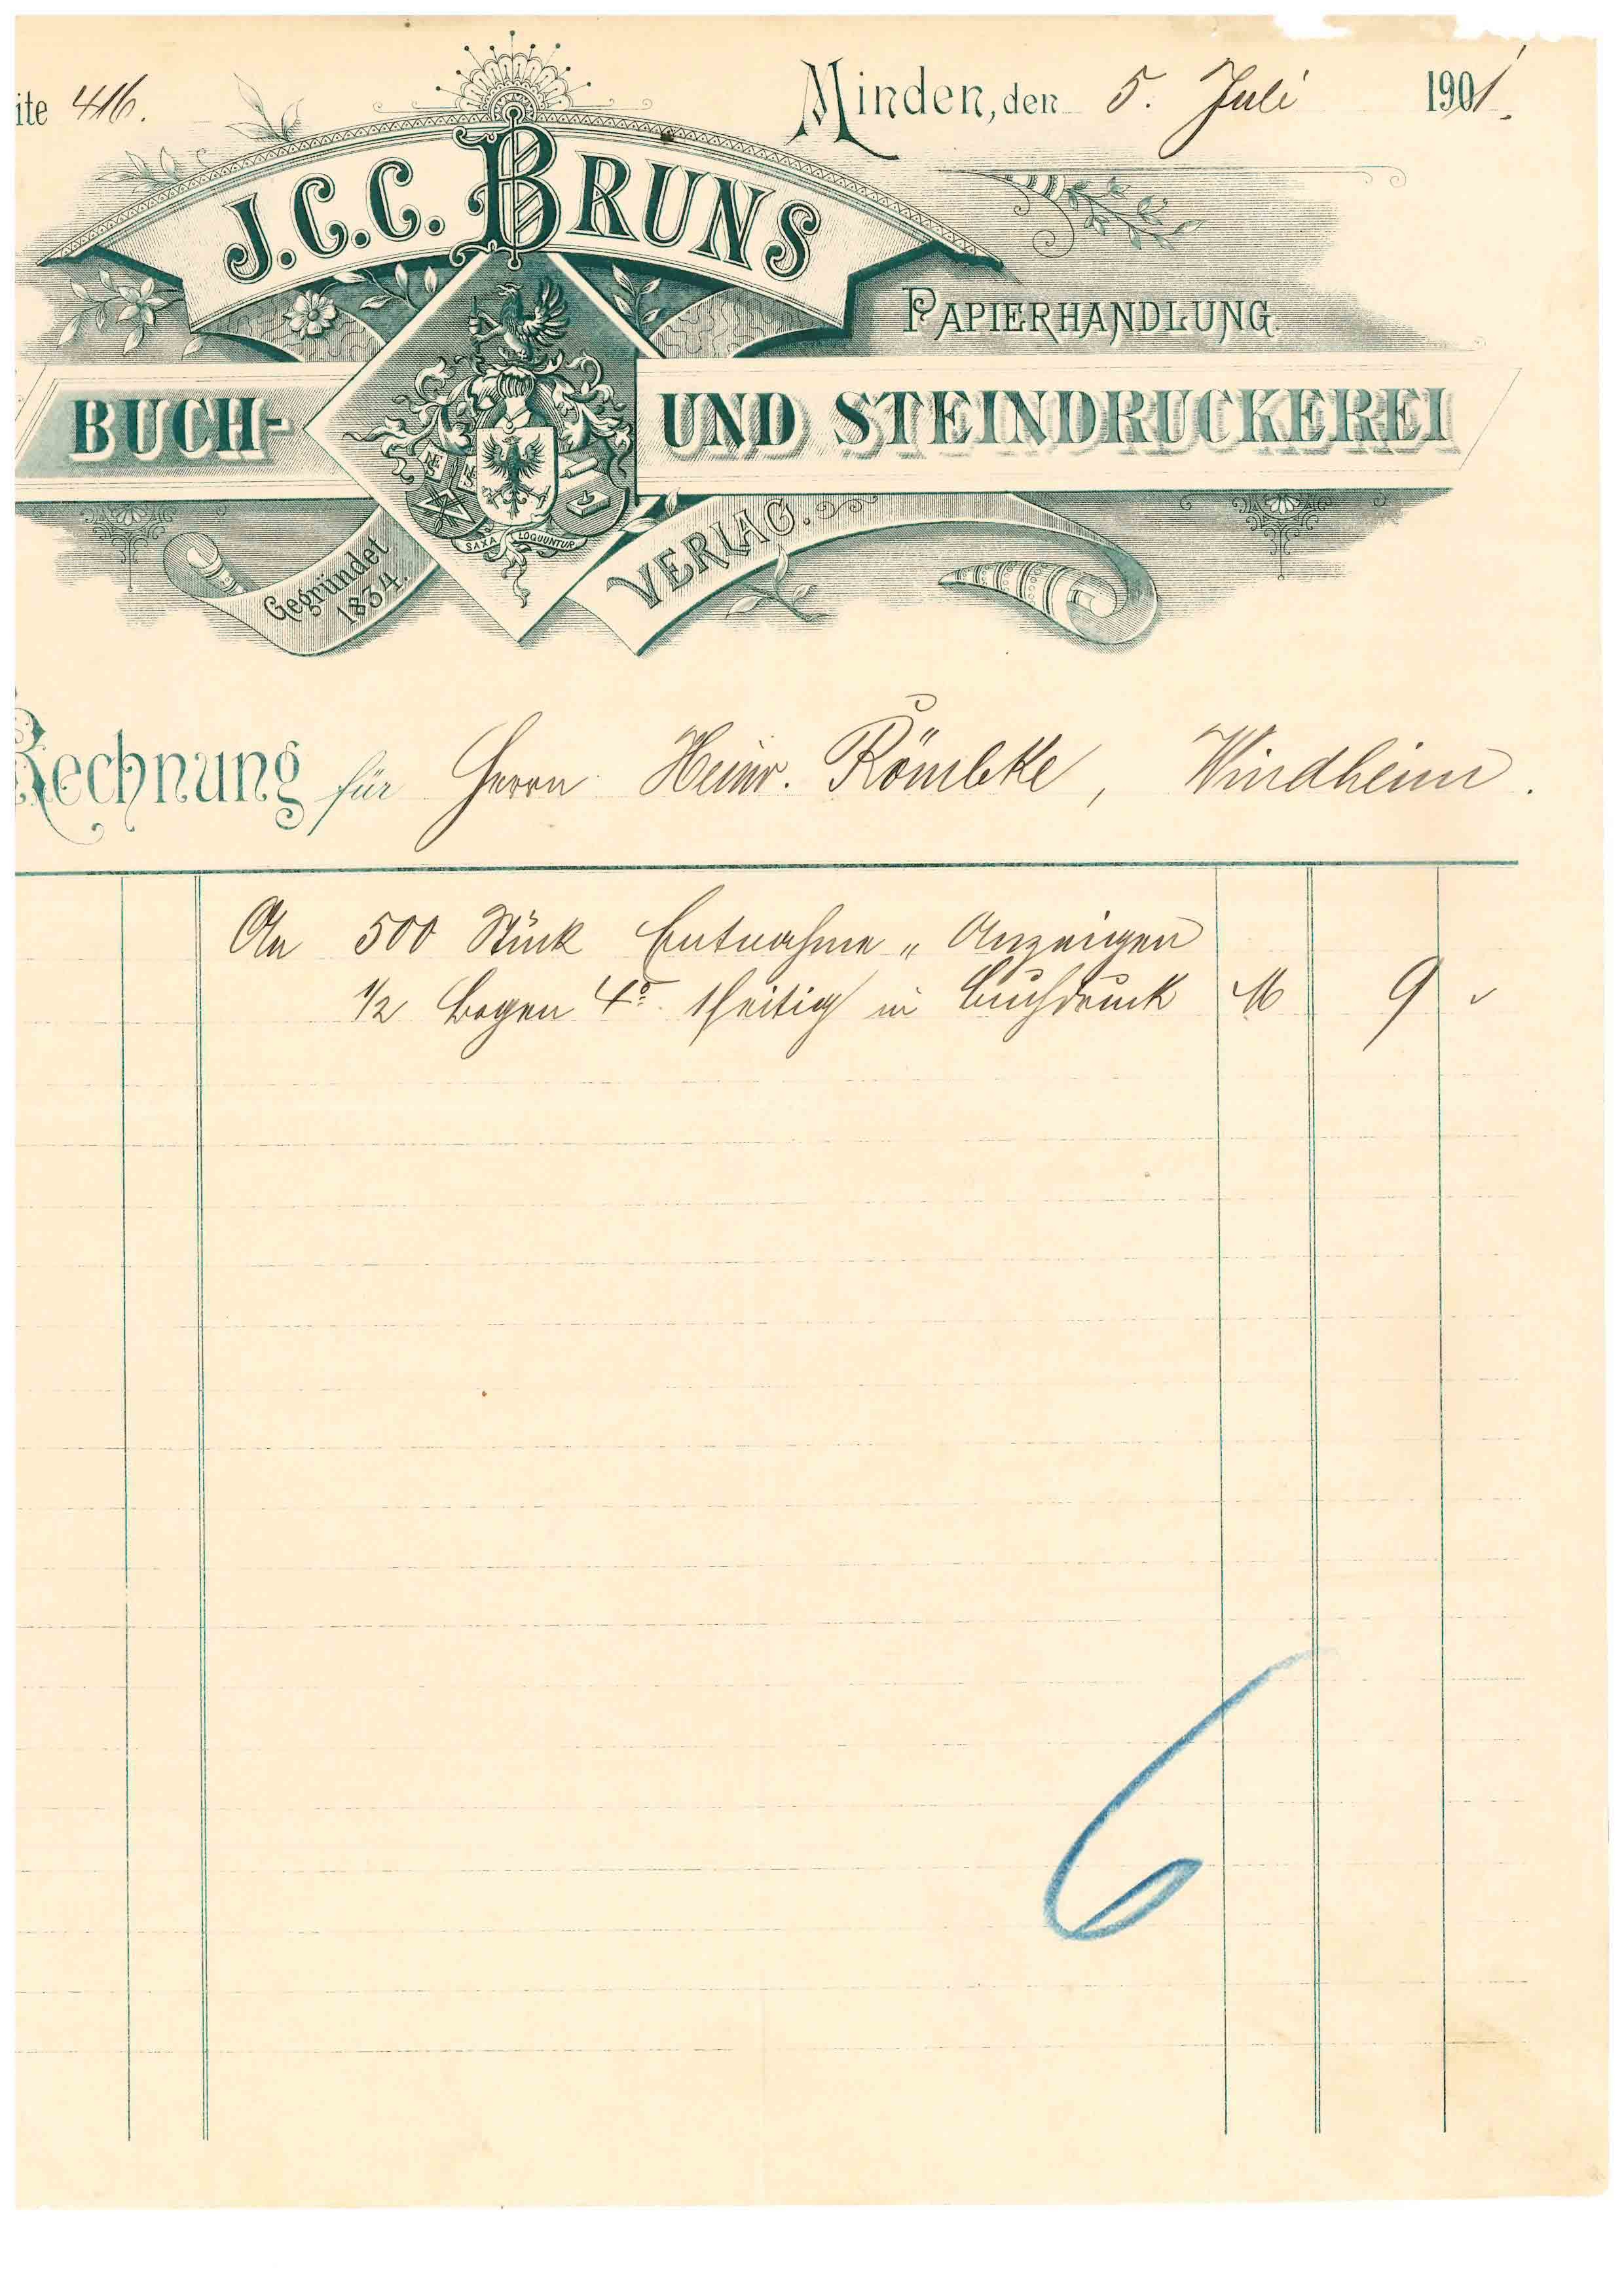 Rechnung J. C. C. Bruns, 1901, Minden i. W. (Mindener Museum RR-R)